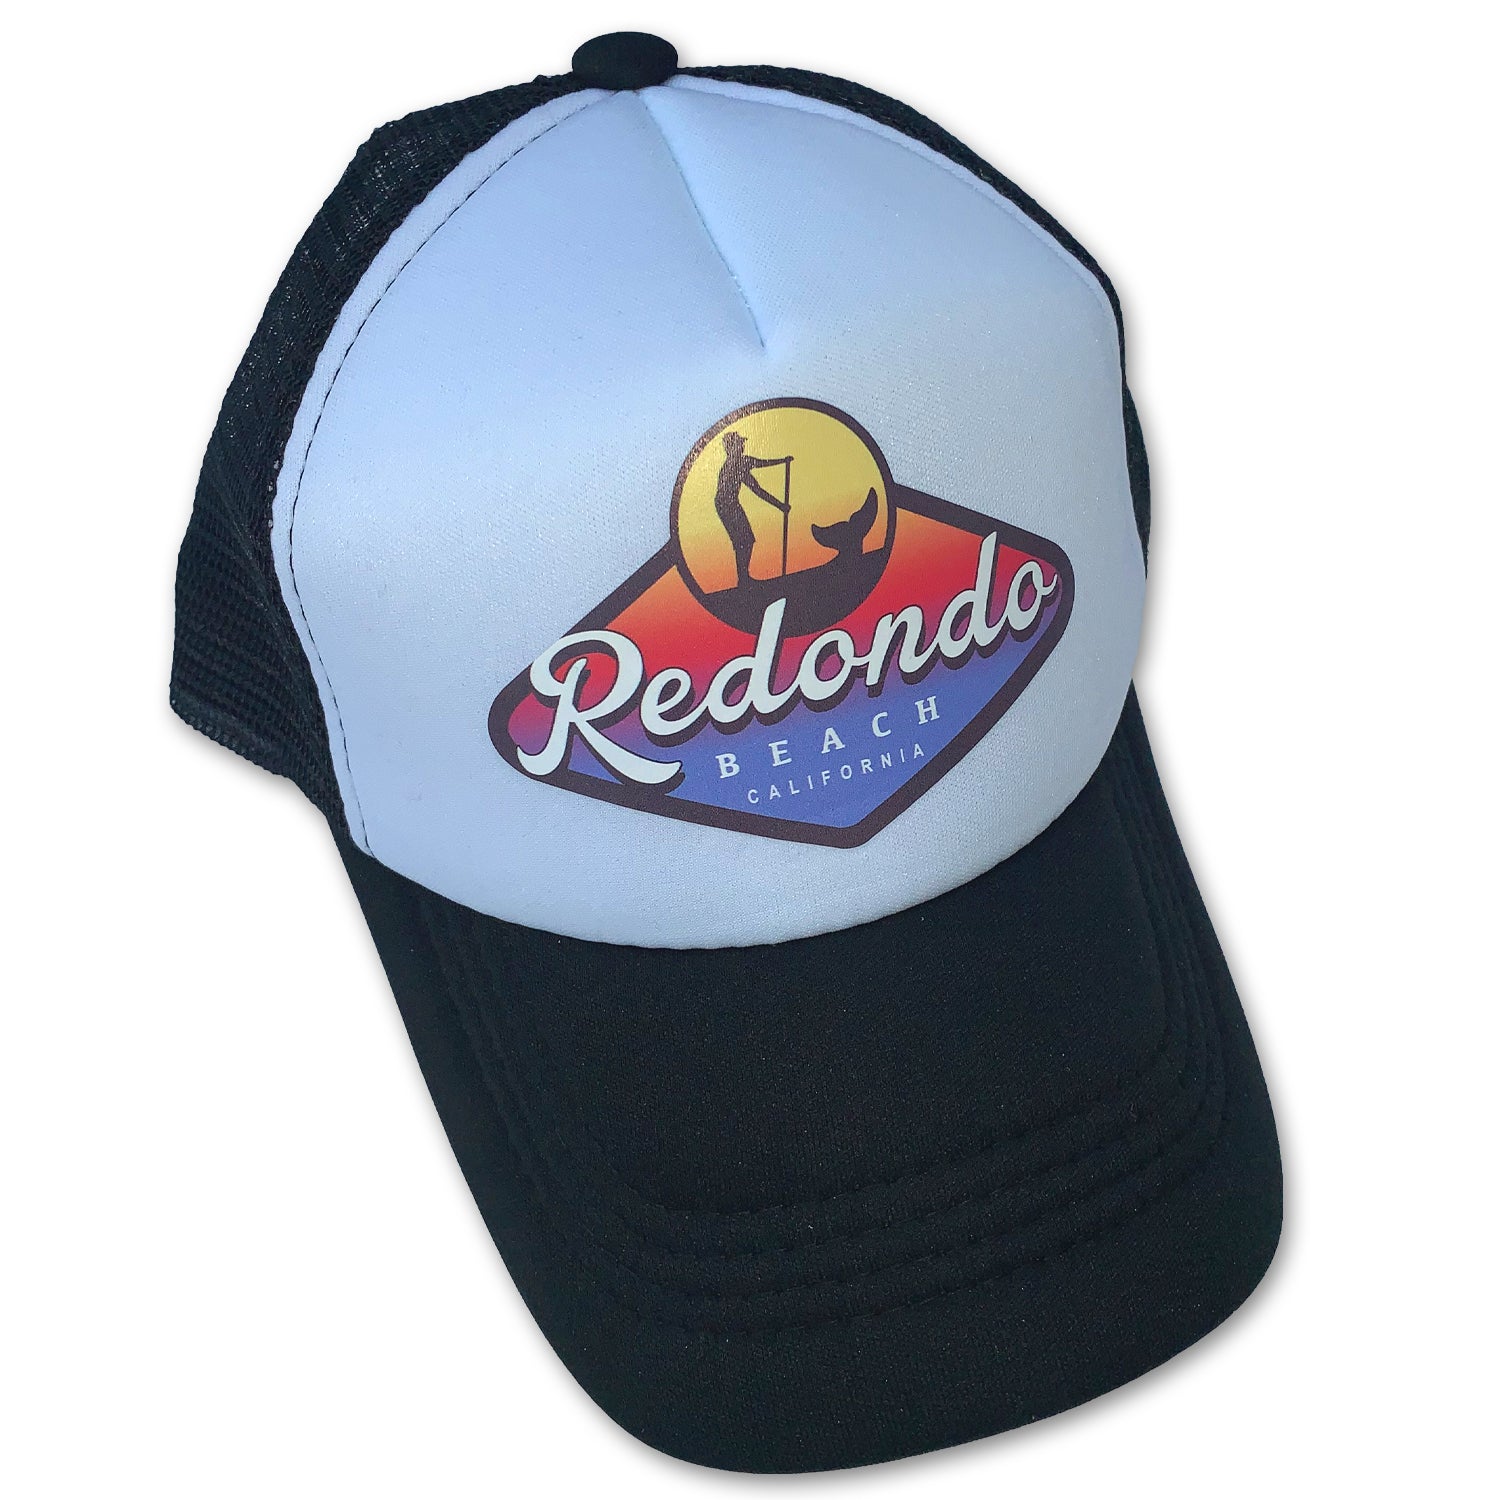 Redondo Beach Standup Paddleboard Badge Trucker Hat